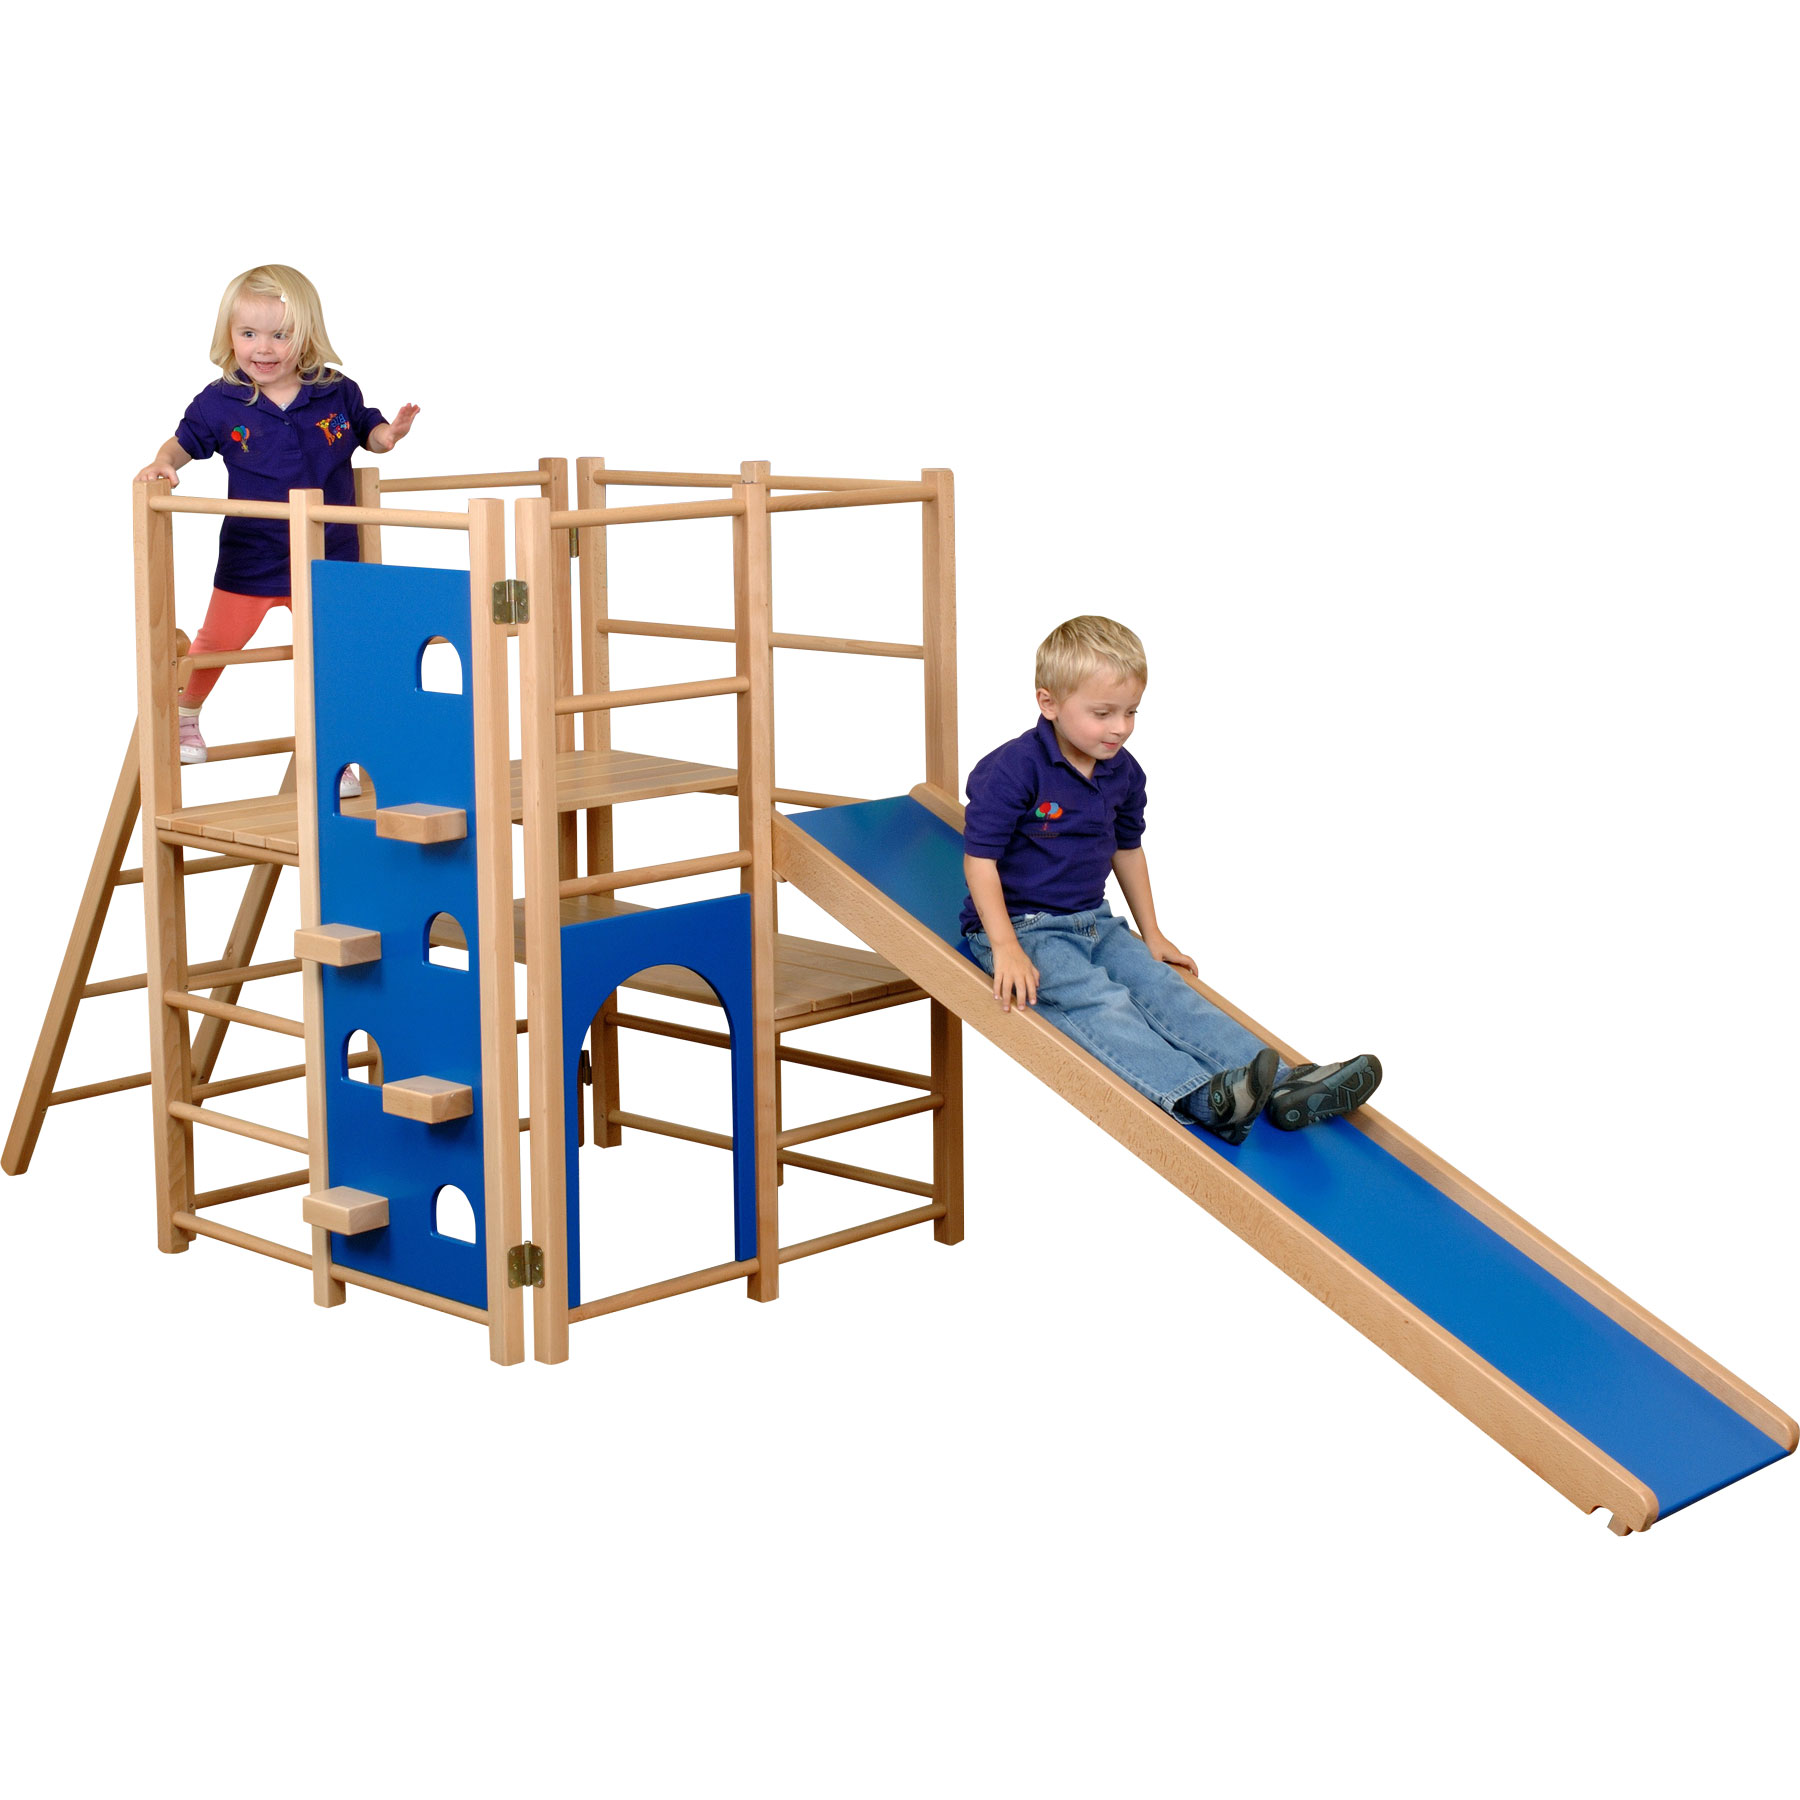 Children's Climbing Frames & Play Pods